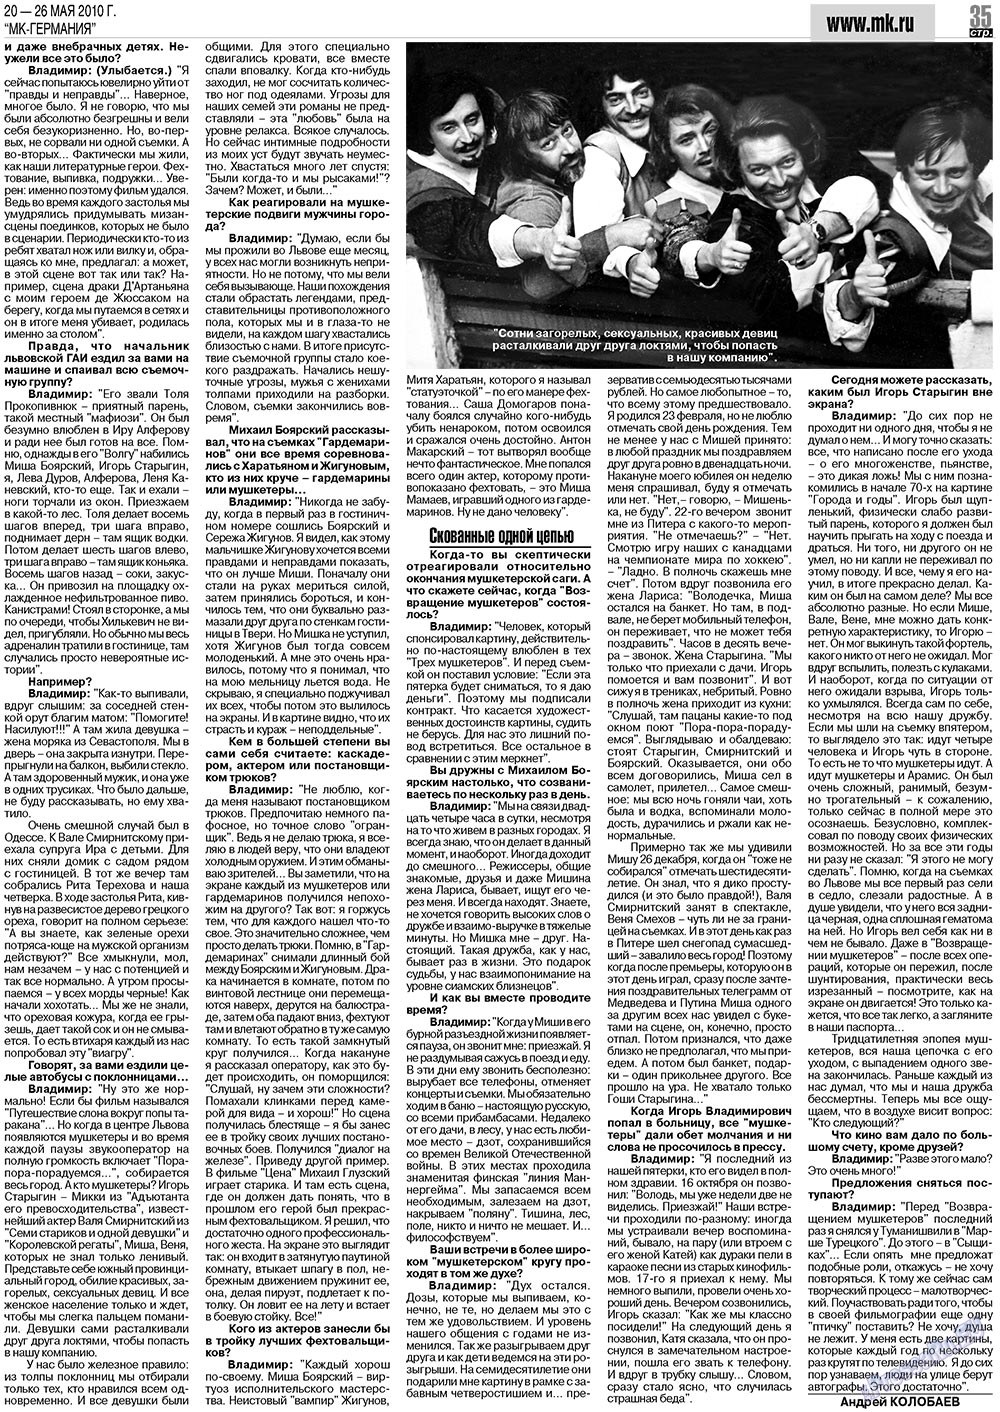 МК-Германия (газета). 2010 год, номер 21, стр. 35